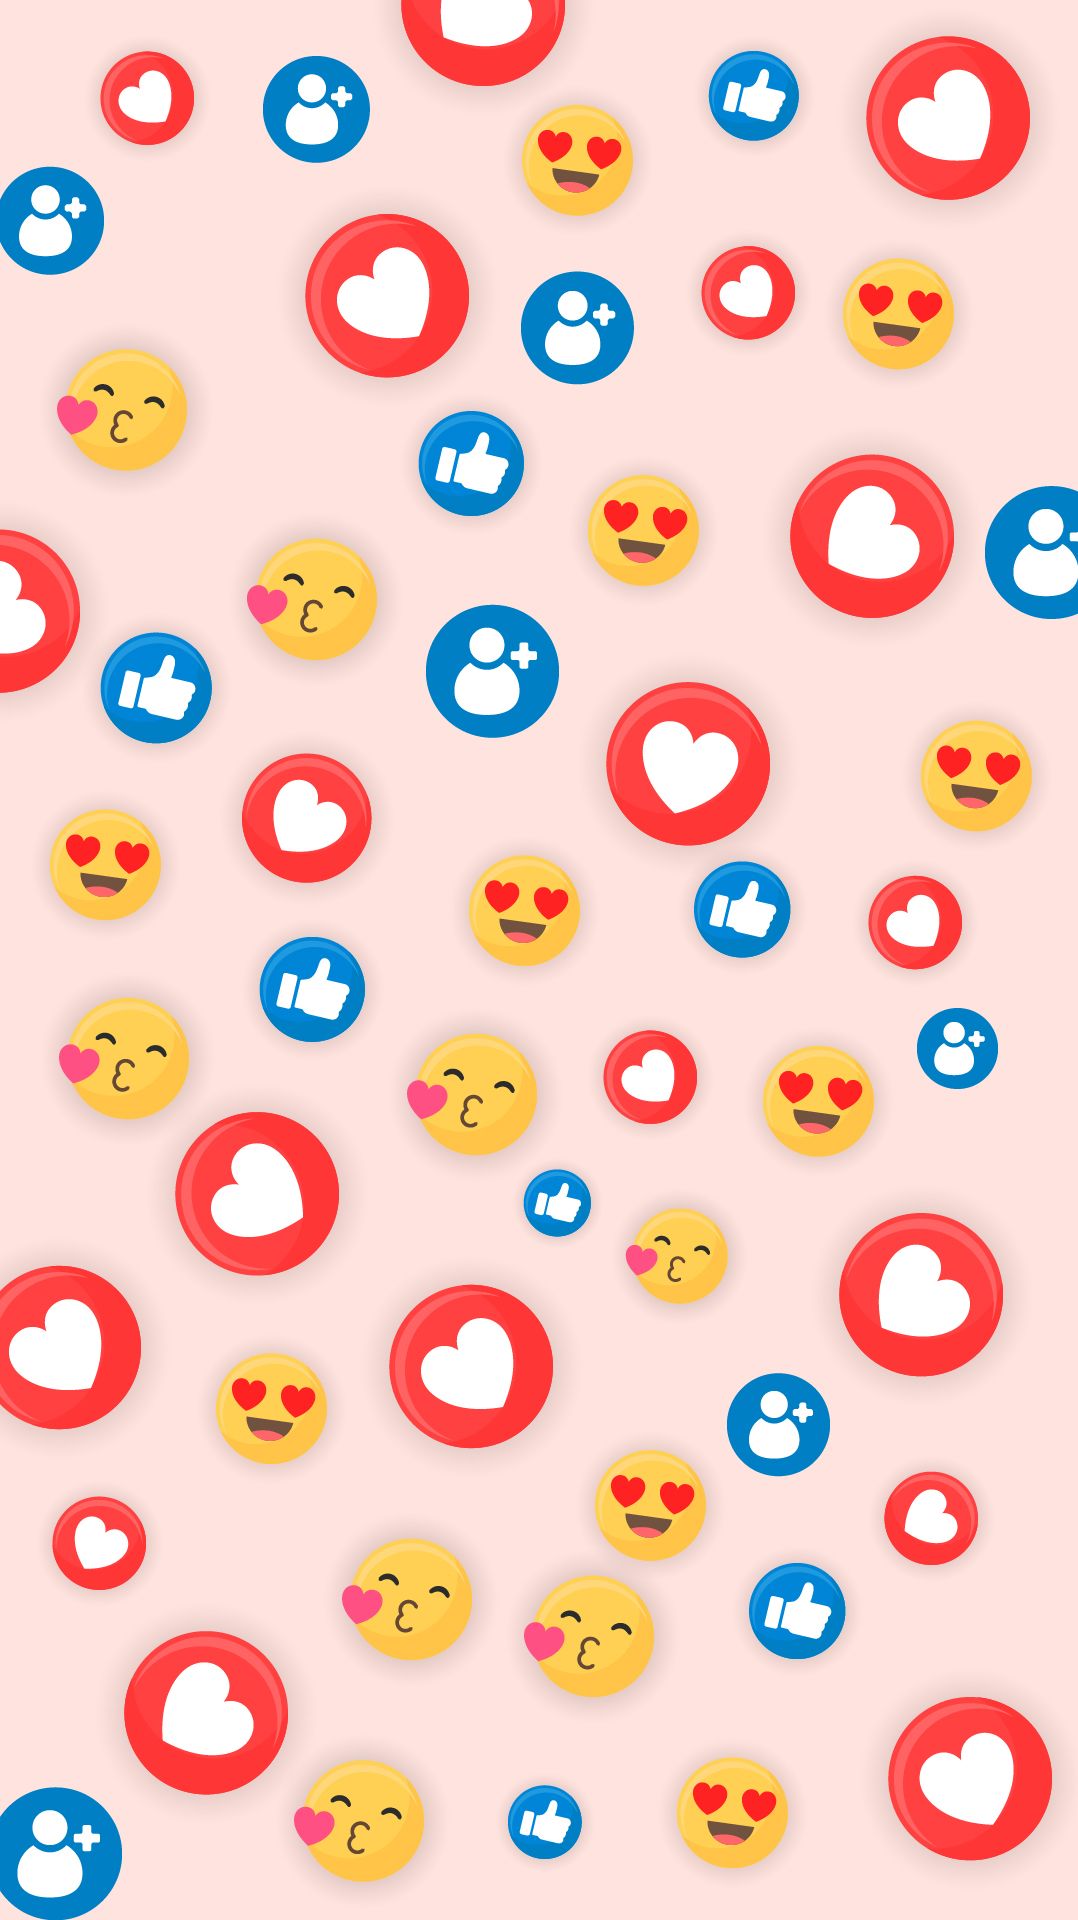 FREE Emoji Background Download in Illustrator, EPS, SVG, JPG, PNG